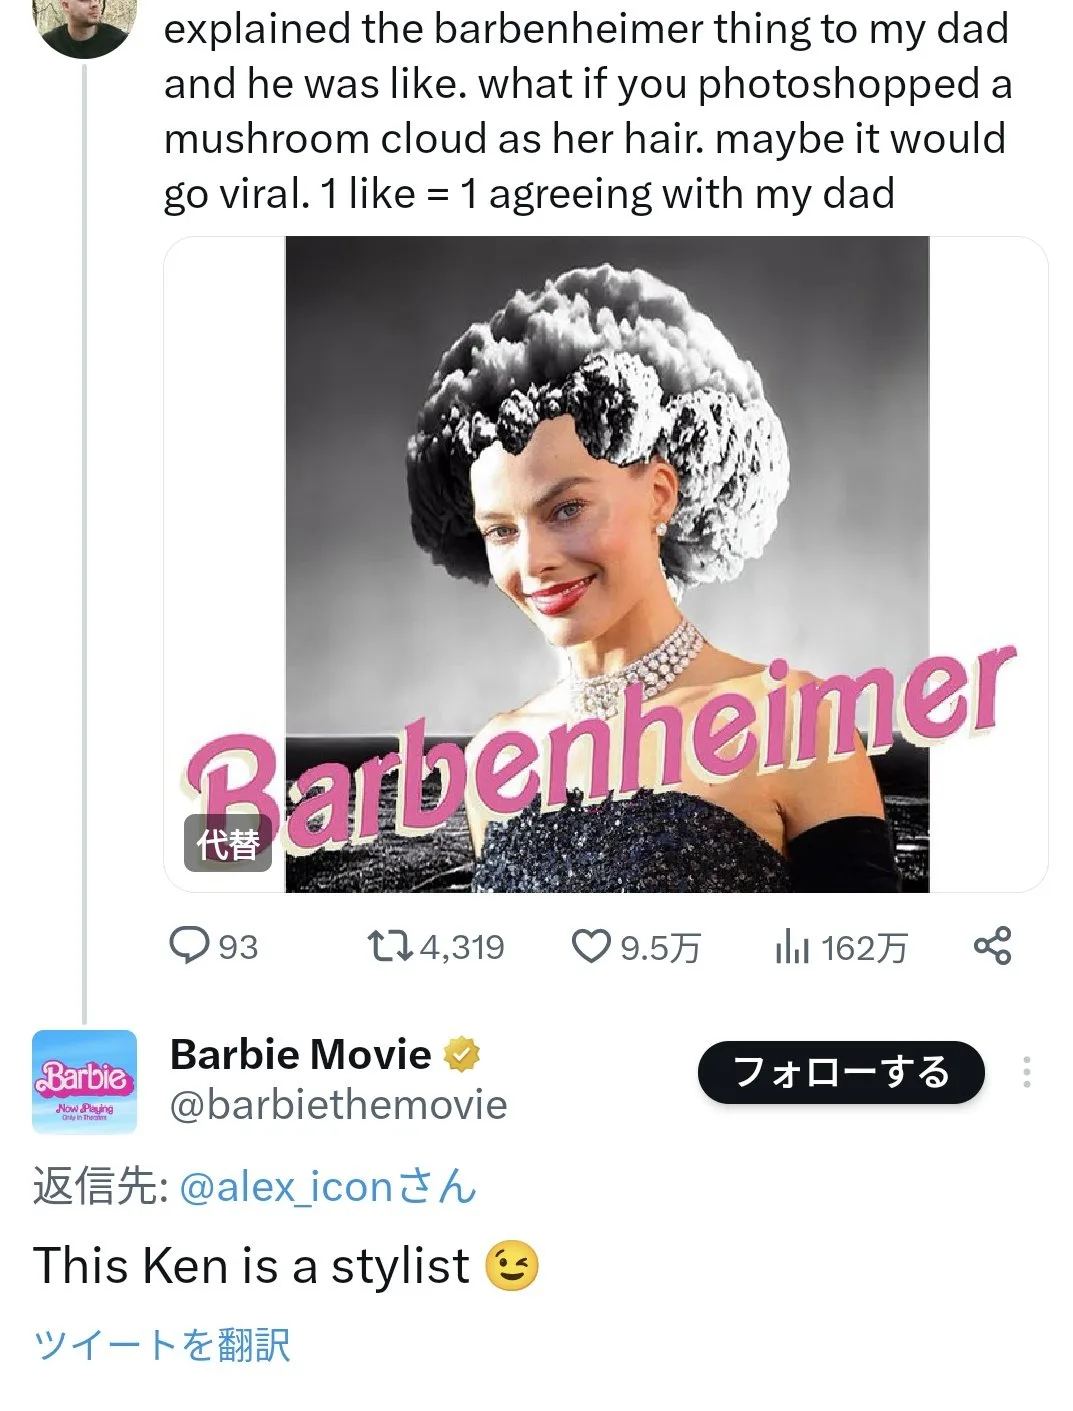 "Barbie" x Japão: entenda a polêmica que levou Warner Bros. a pedir desculpas